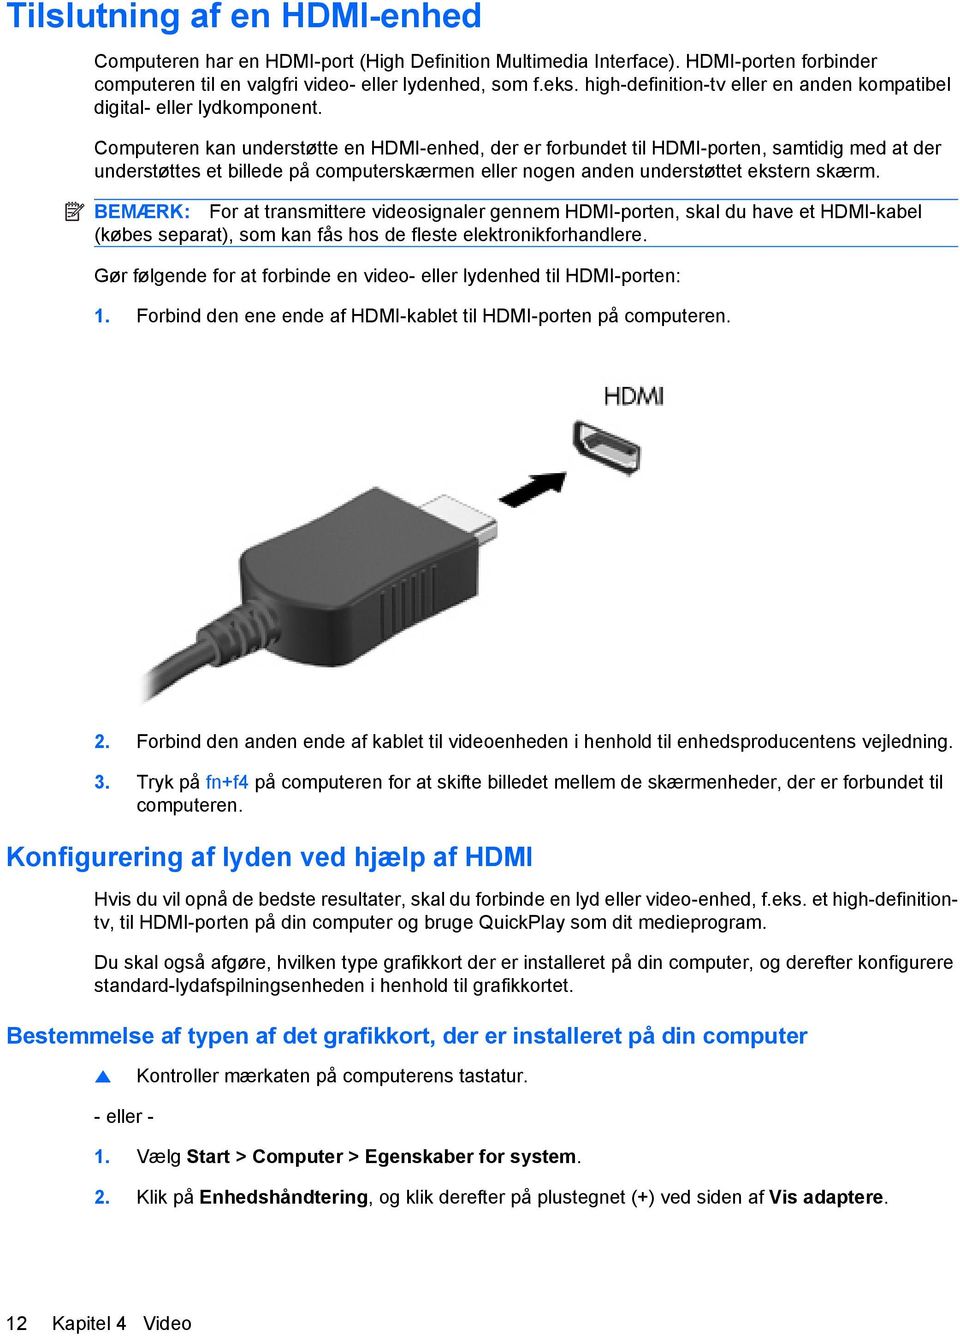 Computeren kan understøtte en HDMI-enhed, der er forbundet til HDMI-porten, samtidig med at der understøttes et billede på computerskærmen eller nogen anden understøttet ekstern skærm.